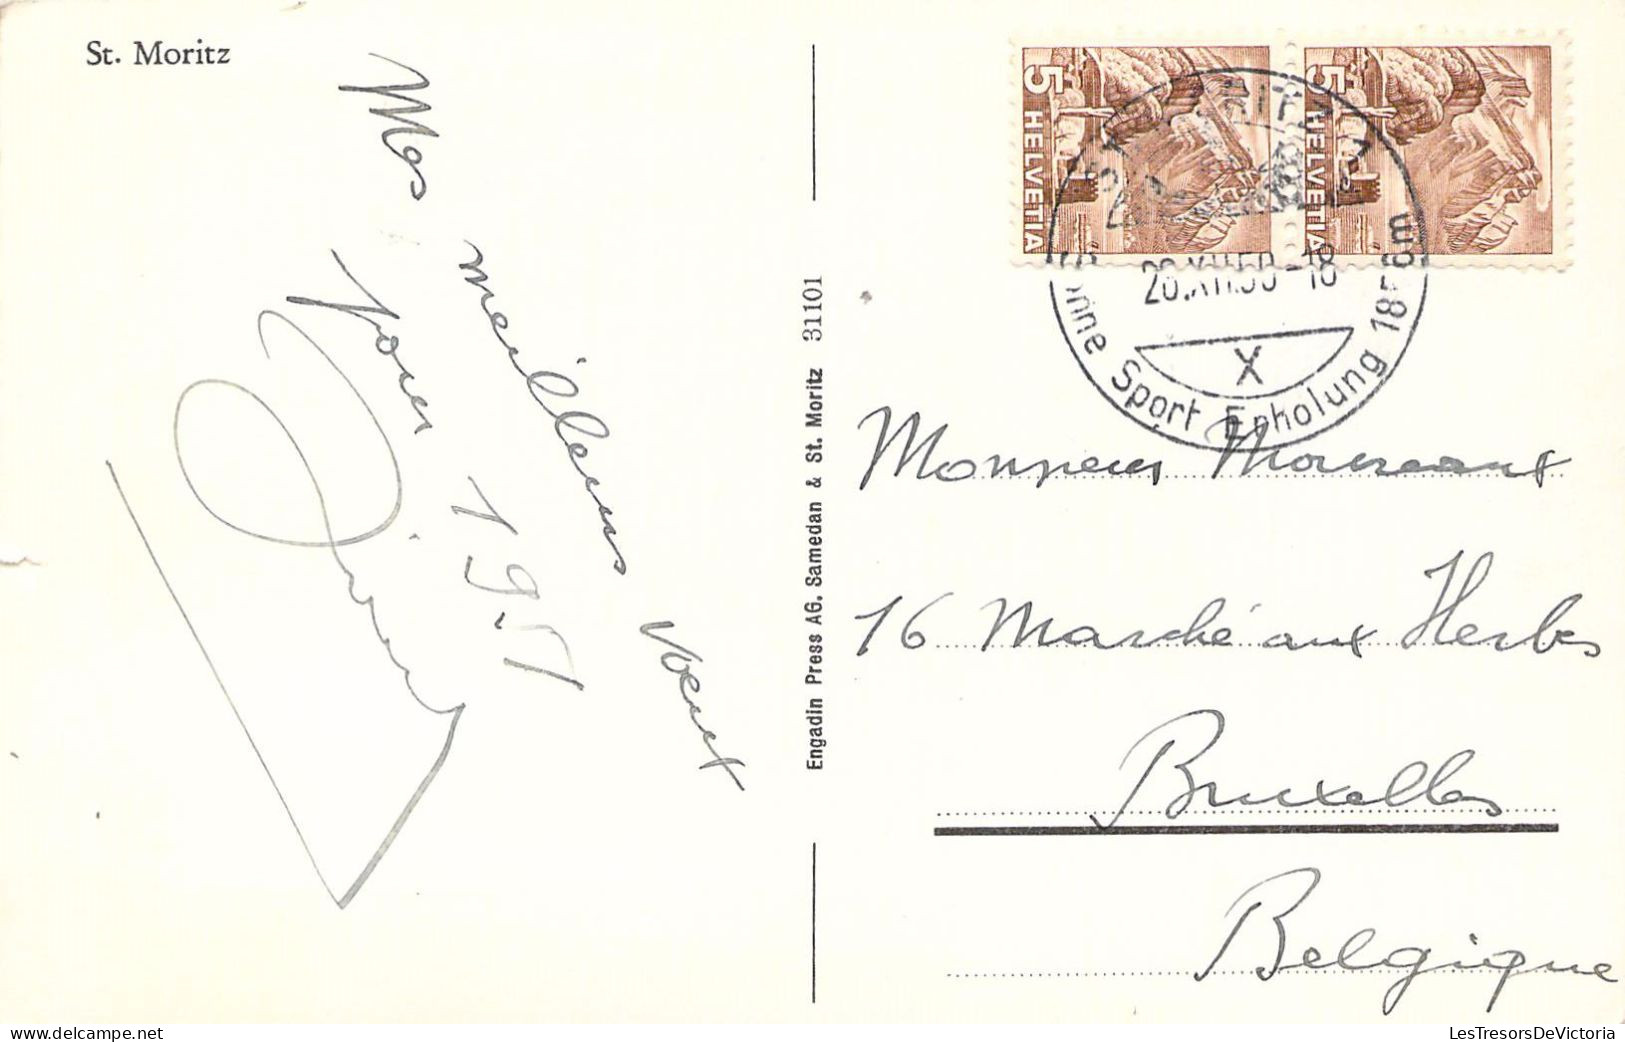 SUISSE - St MORITZ Vue Générale - Carte Postale Ancienne - Sankt Moritz